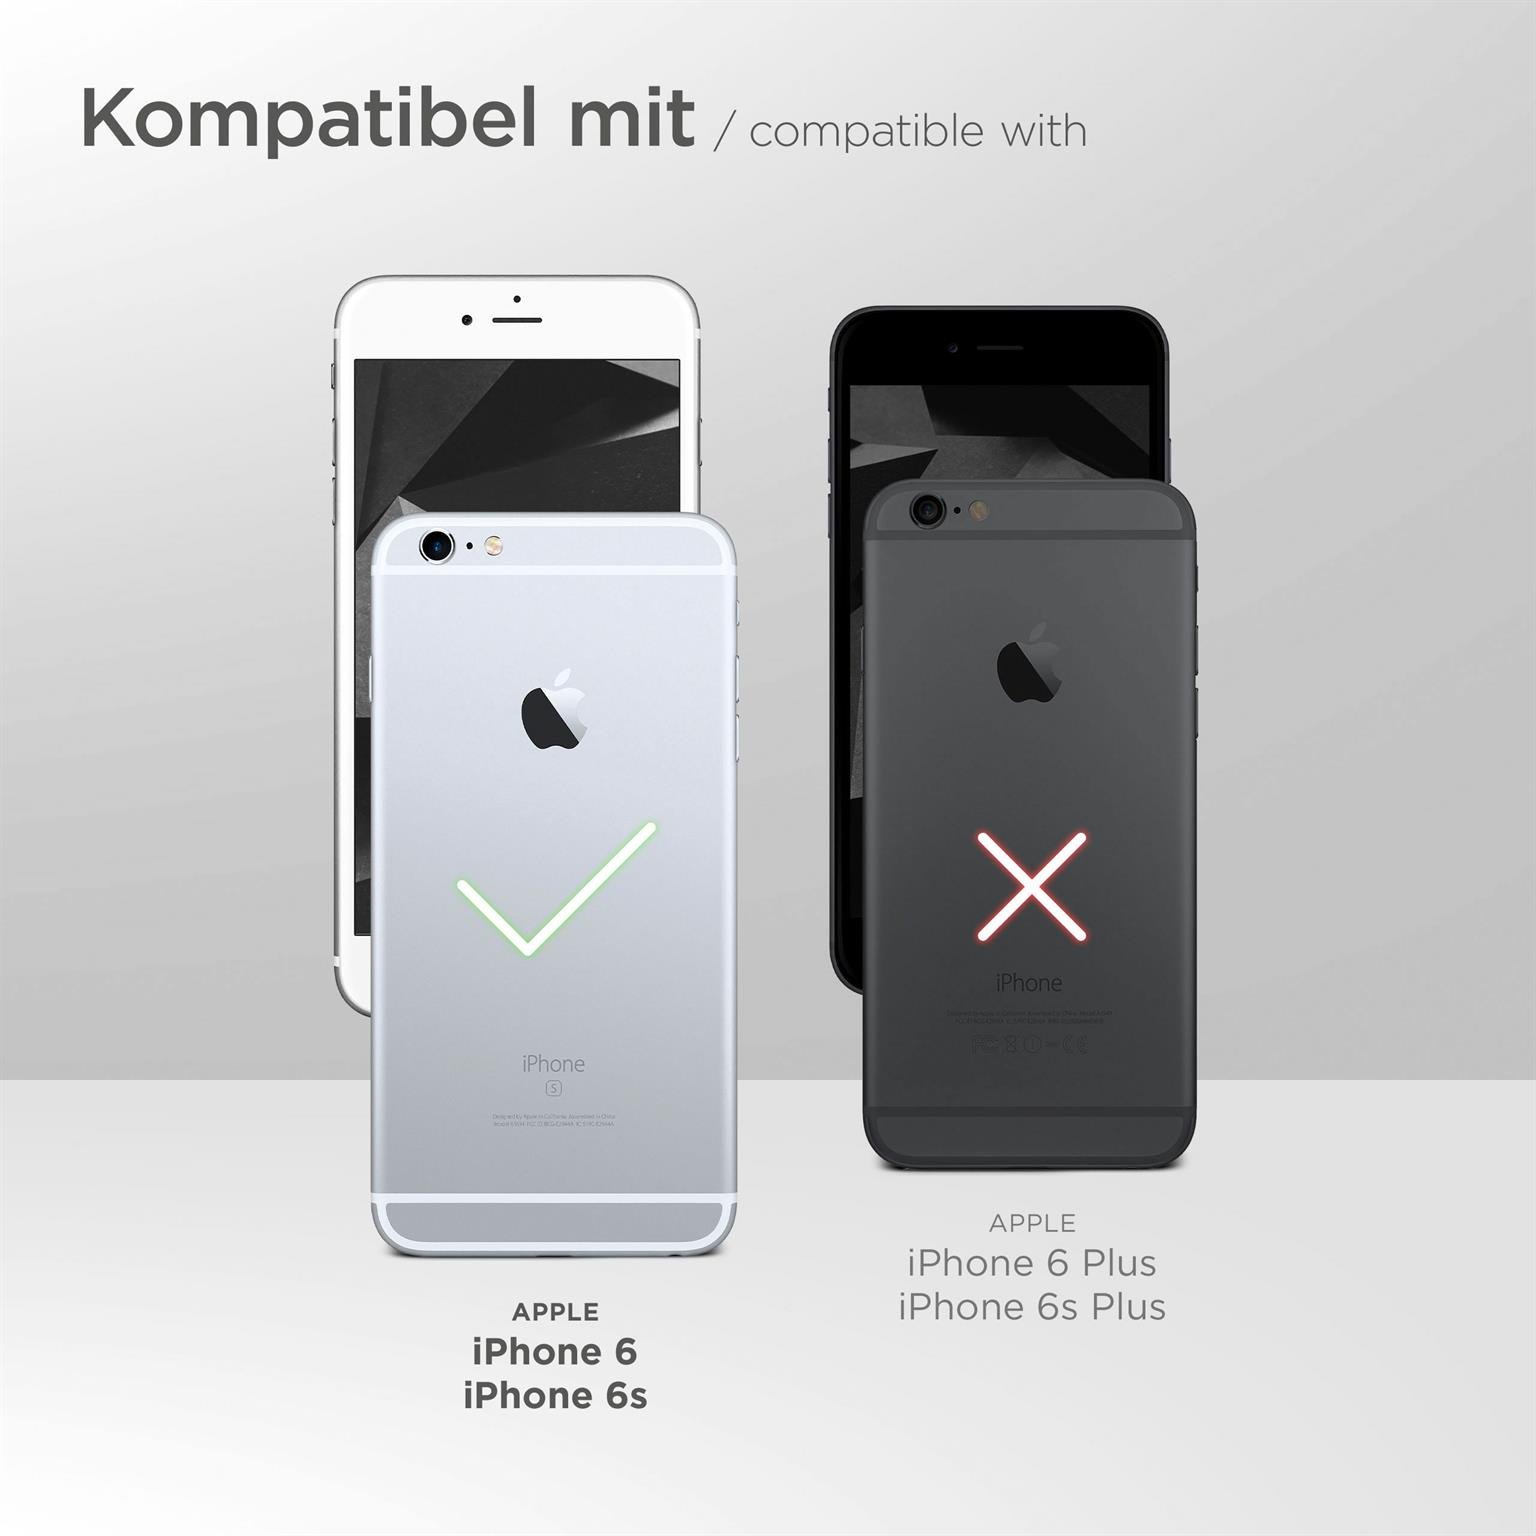 ONEFLOW Zeal Case für Apple iPhone 6 – Handy Gürteltasche aus PU Leder mit Kartenfächern